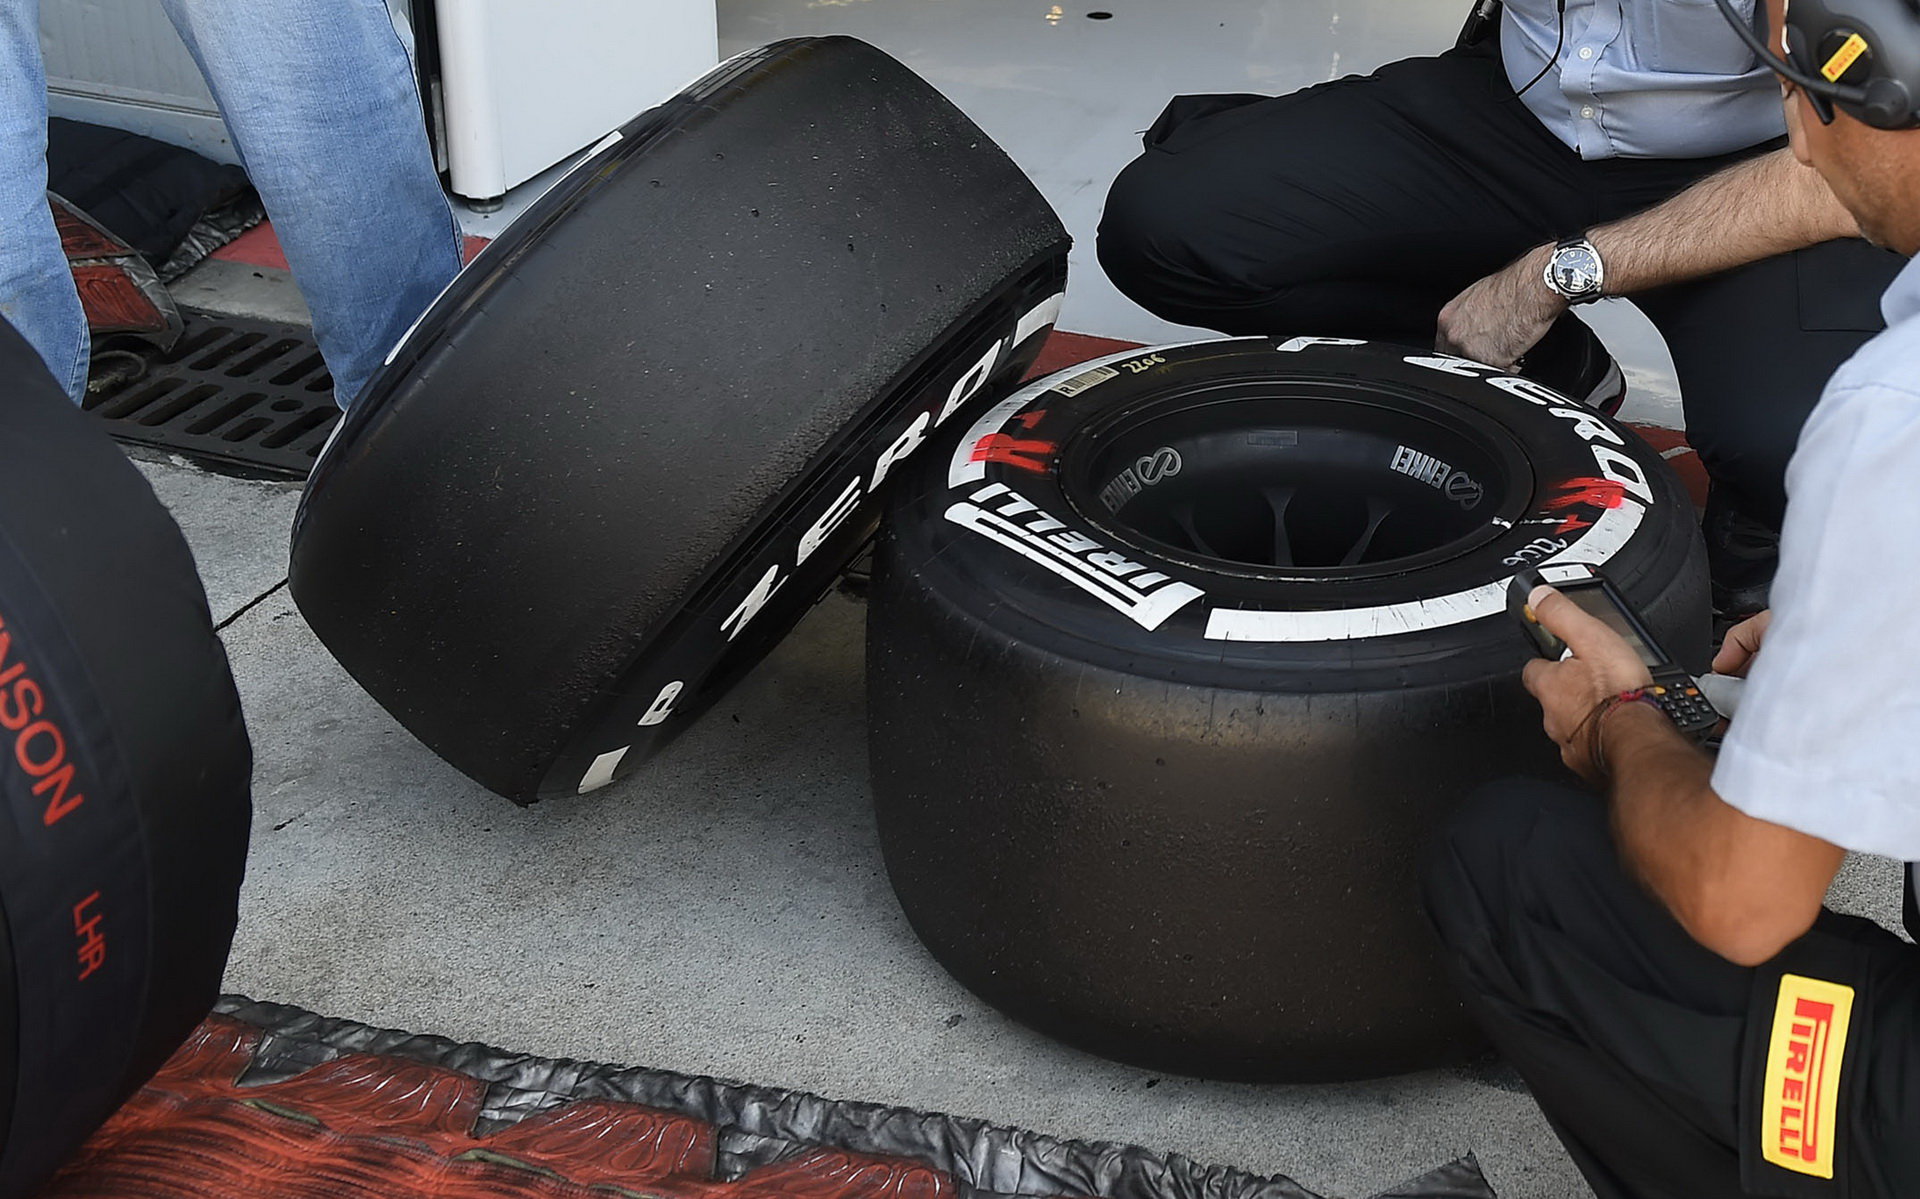 Tlak v pneumatikách Mercedesů během závodu klesl pod pravidly stanovenou úroveň 19,5 PSI